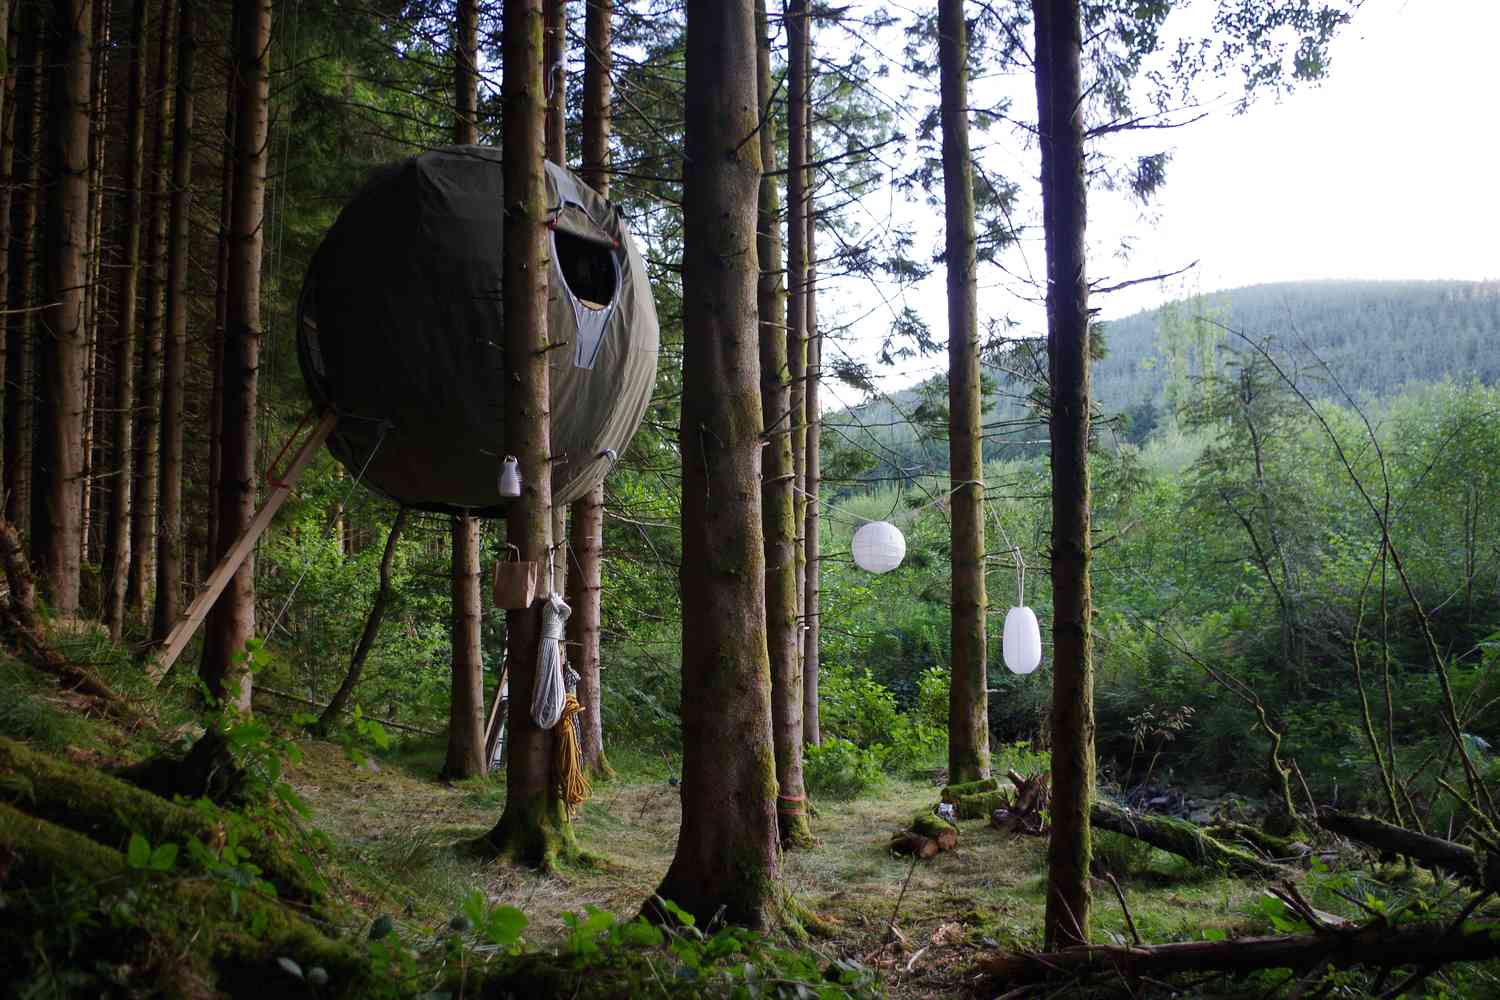 Estructura con forma de esfera suspendida en los árboles sobre el suelo del bosque